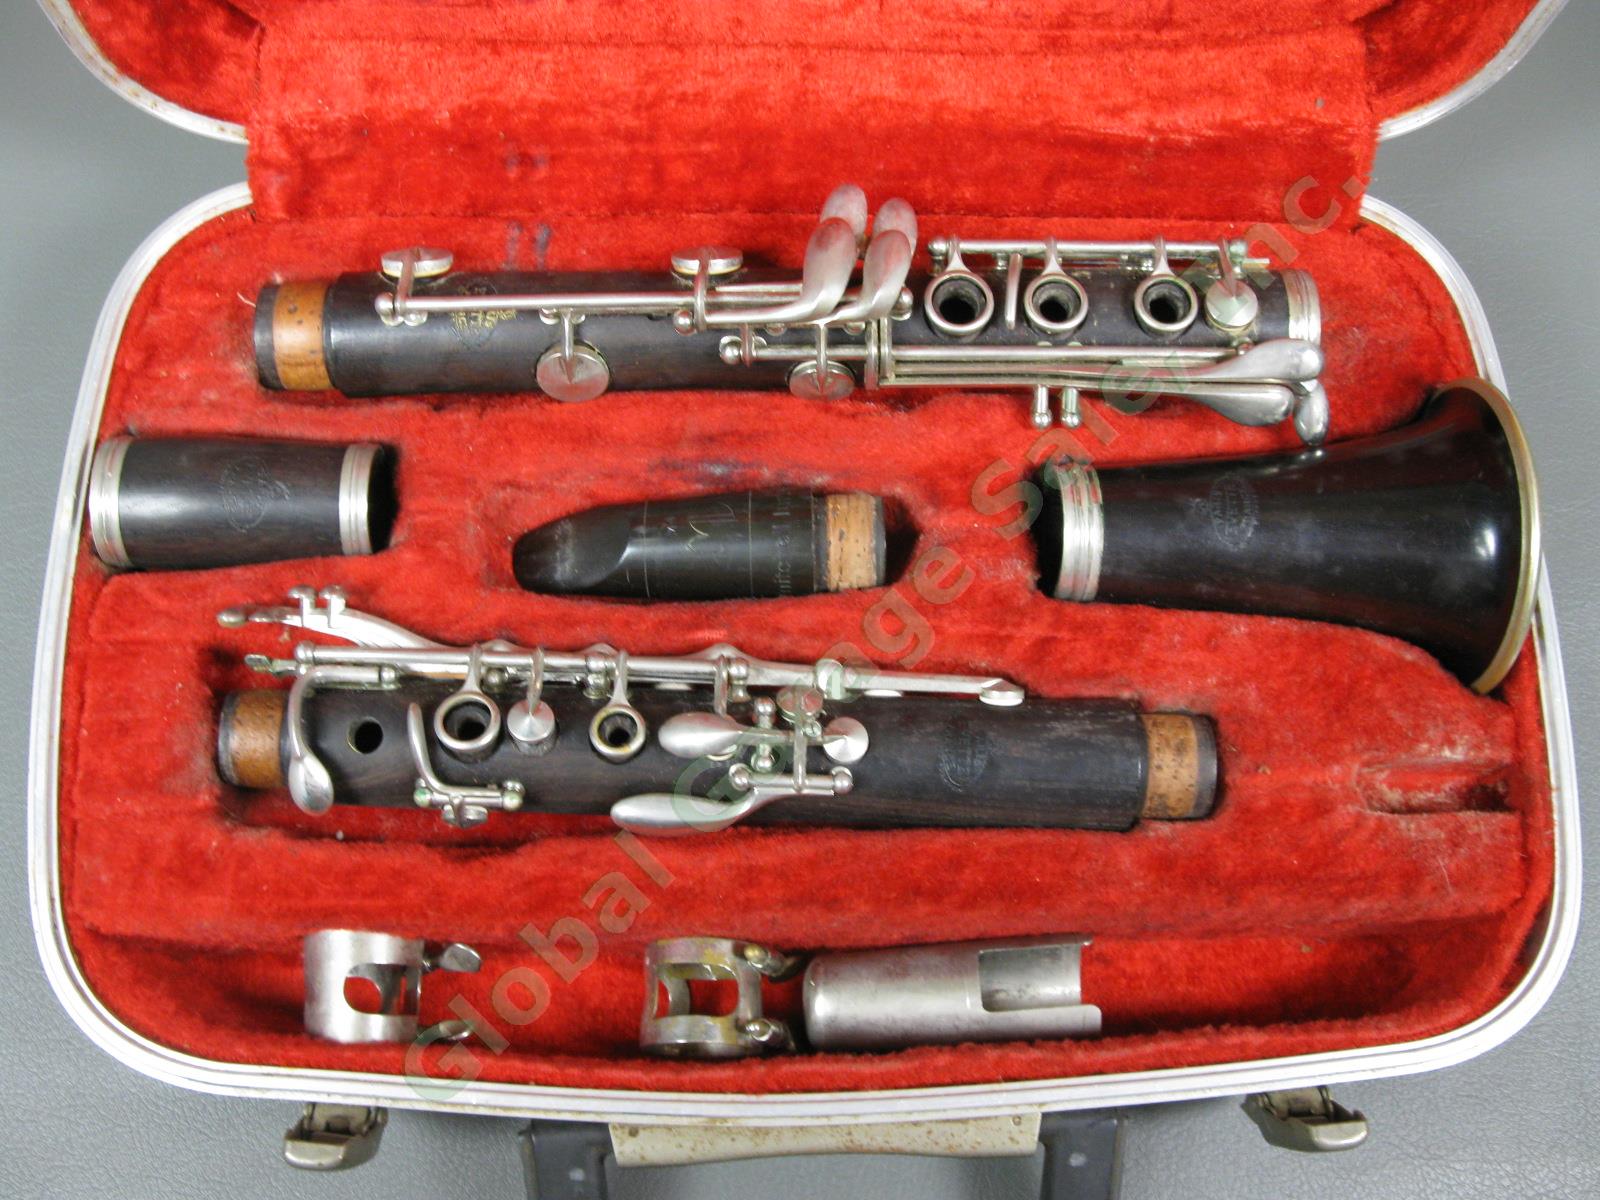 Vintage Buffet Crampon Evette Wood Clarinet D Series & Case D4774 Paris France 1